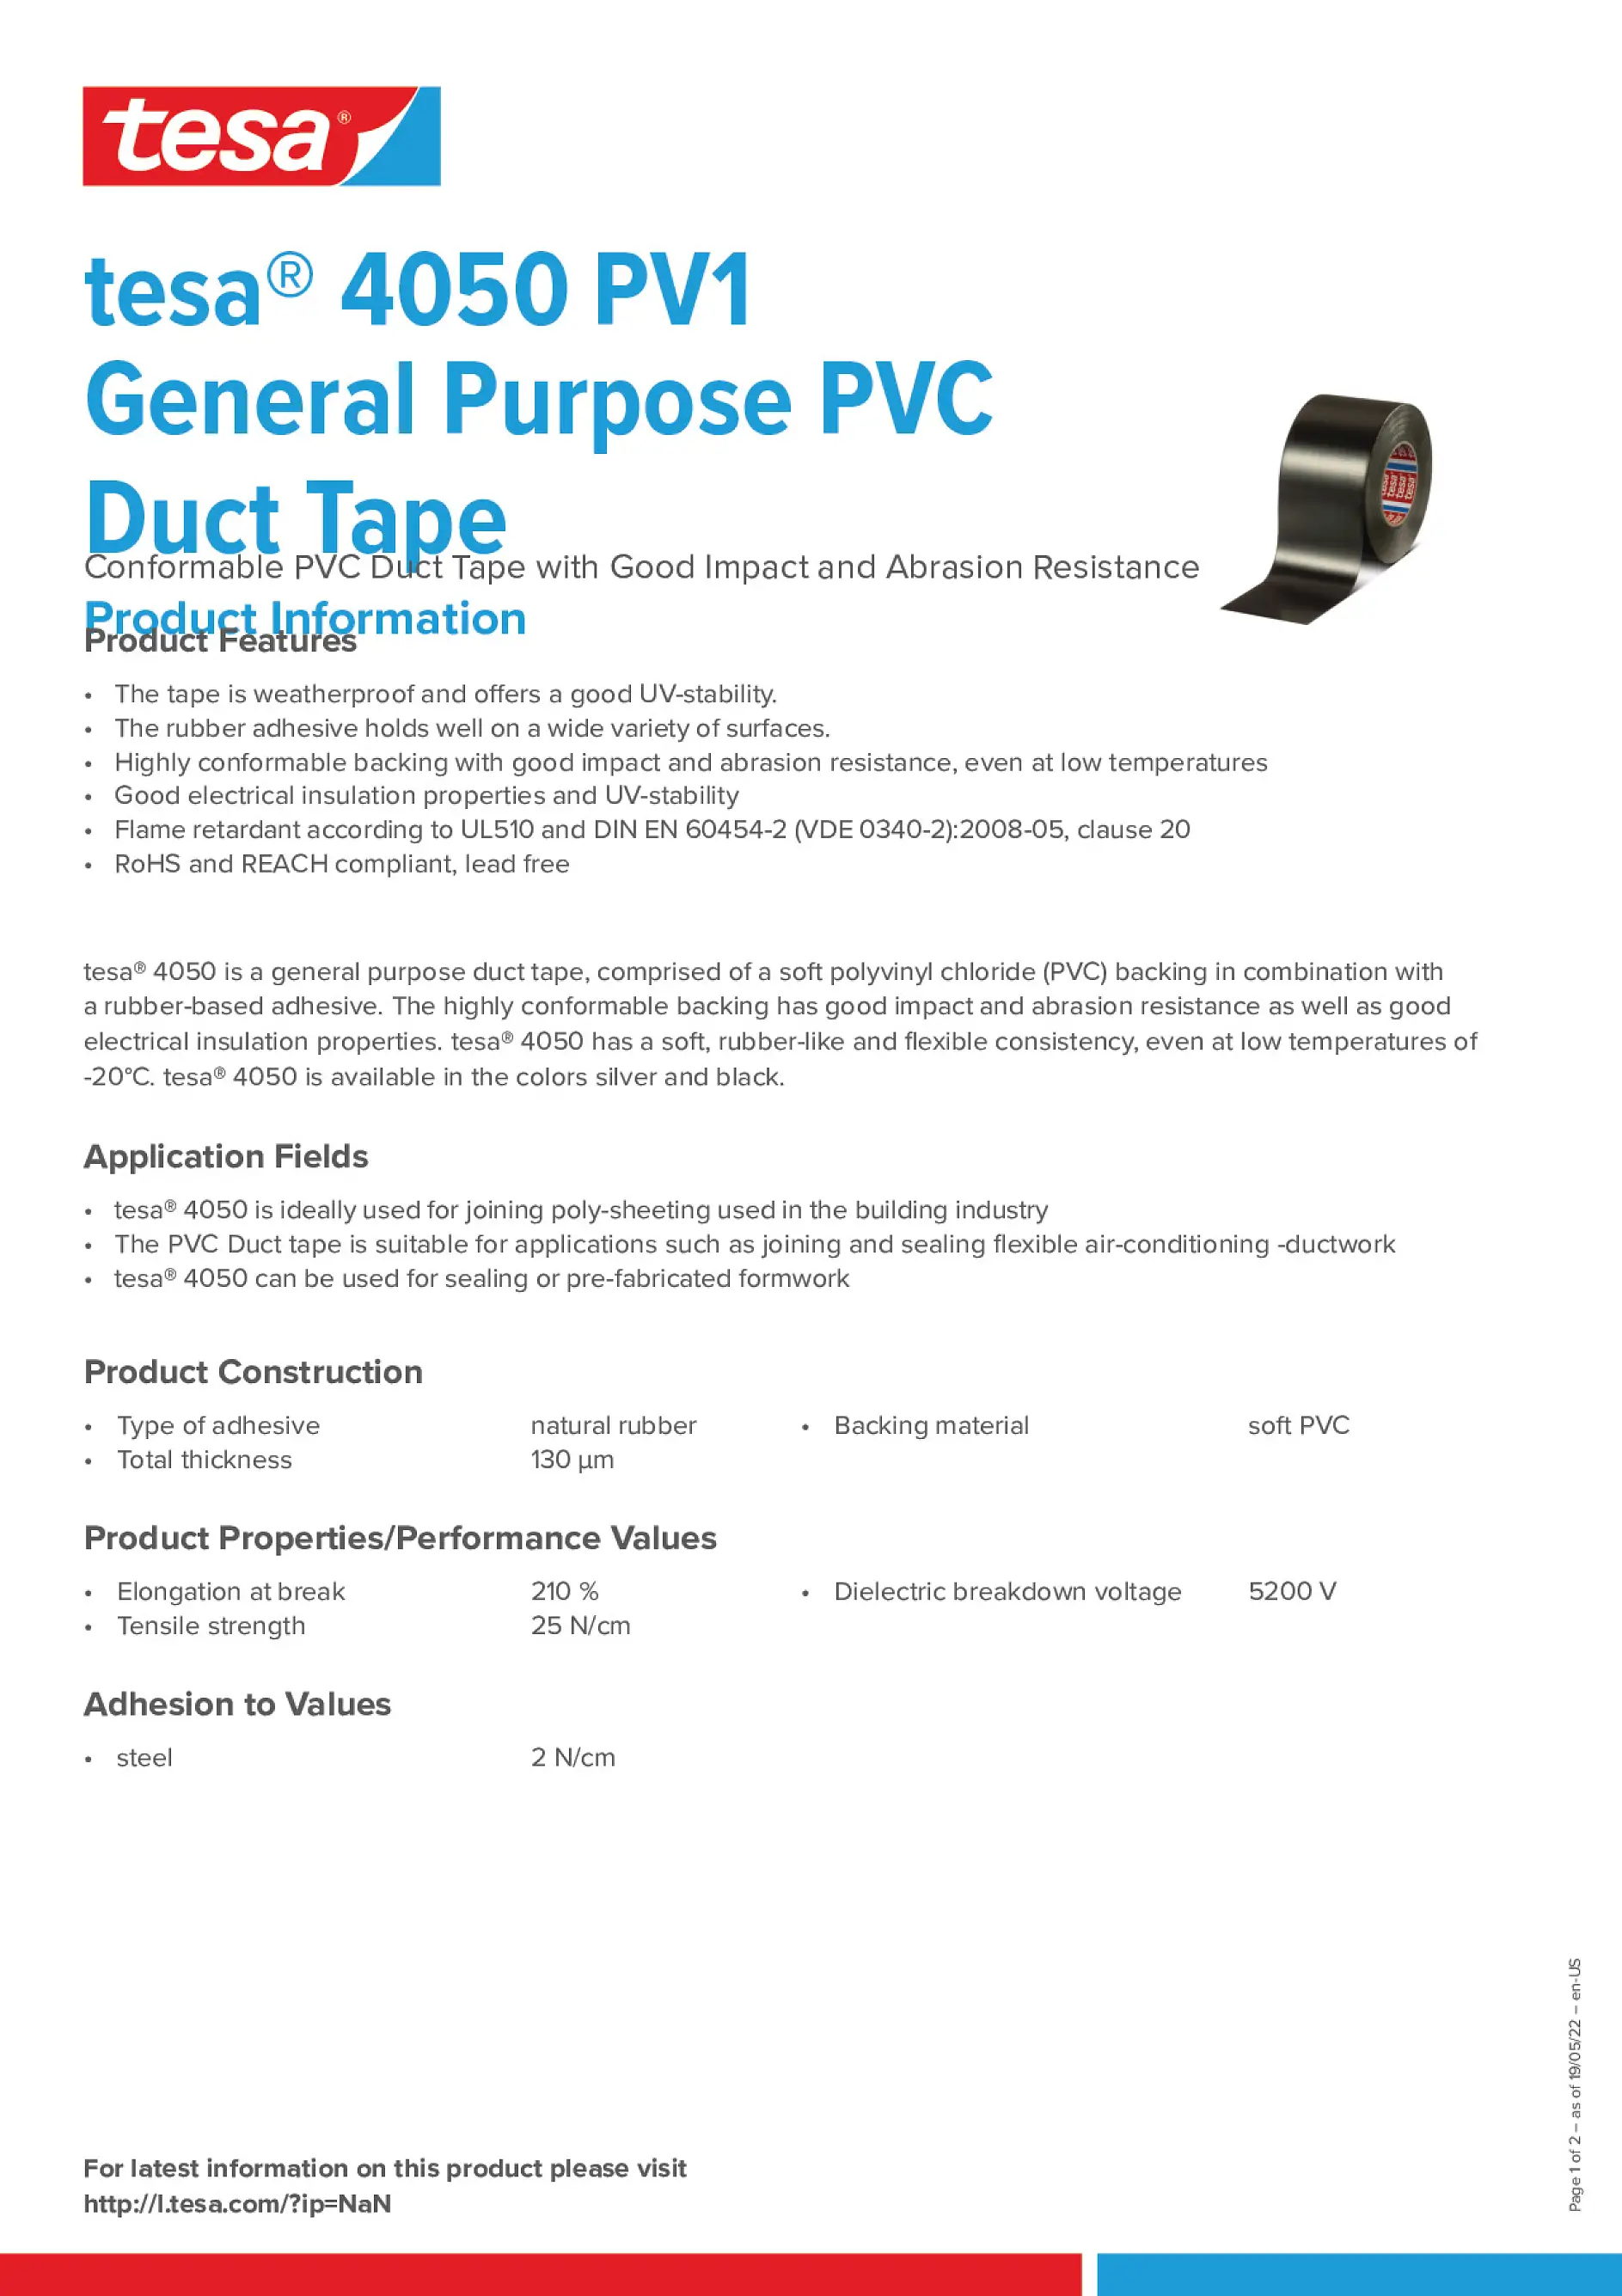 tesa_4050_PV1_General_Purpose_PVC_Duct_Tape_en-US